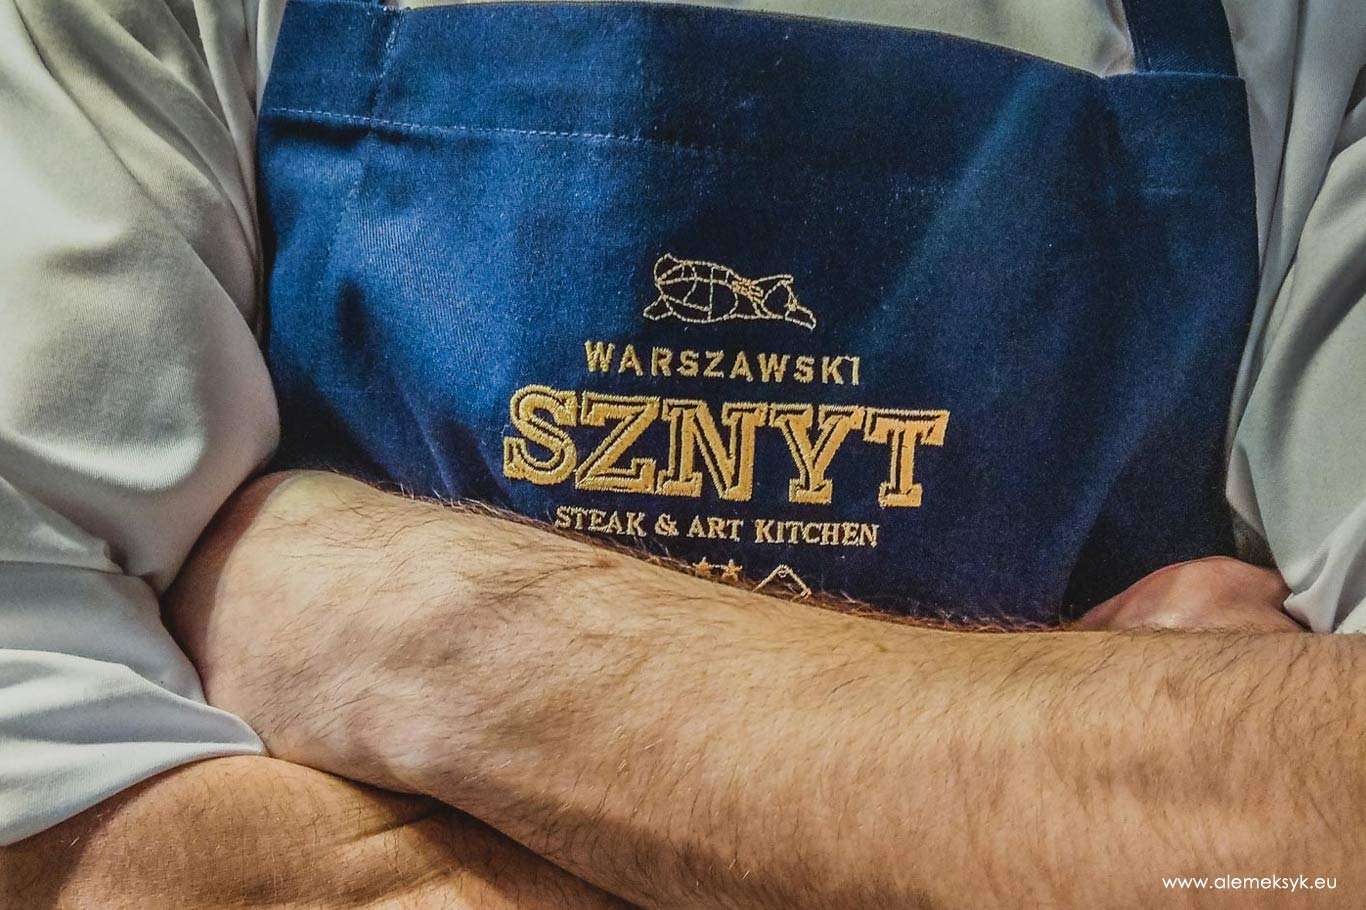 ZAMKNIĘTE NA STAŁE! - Restauracja Warszawski Sznyt - z roku na rok coraz lepsza i bardziej dojrzała